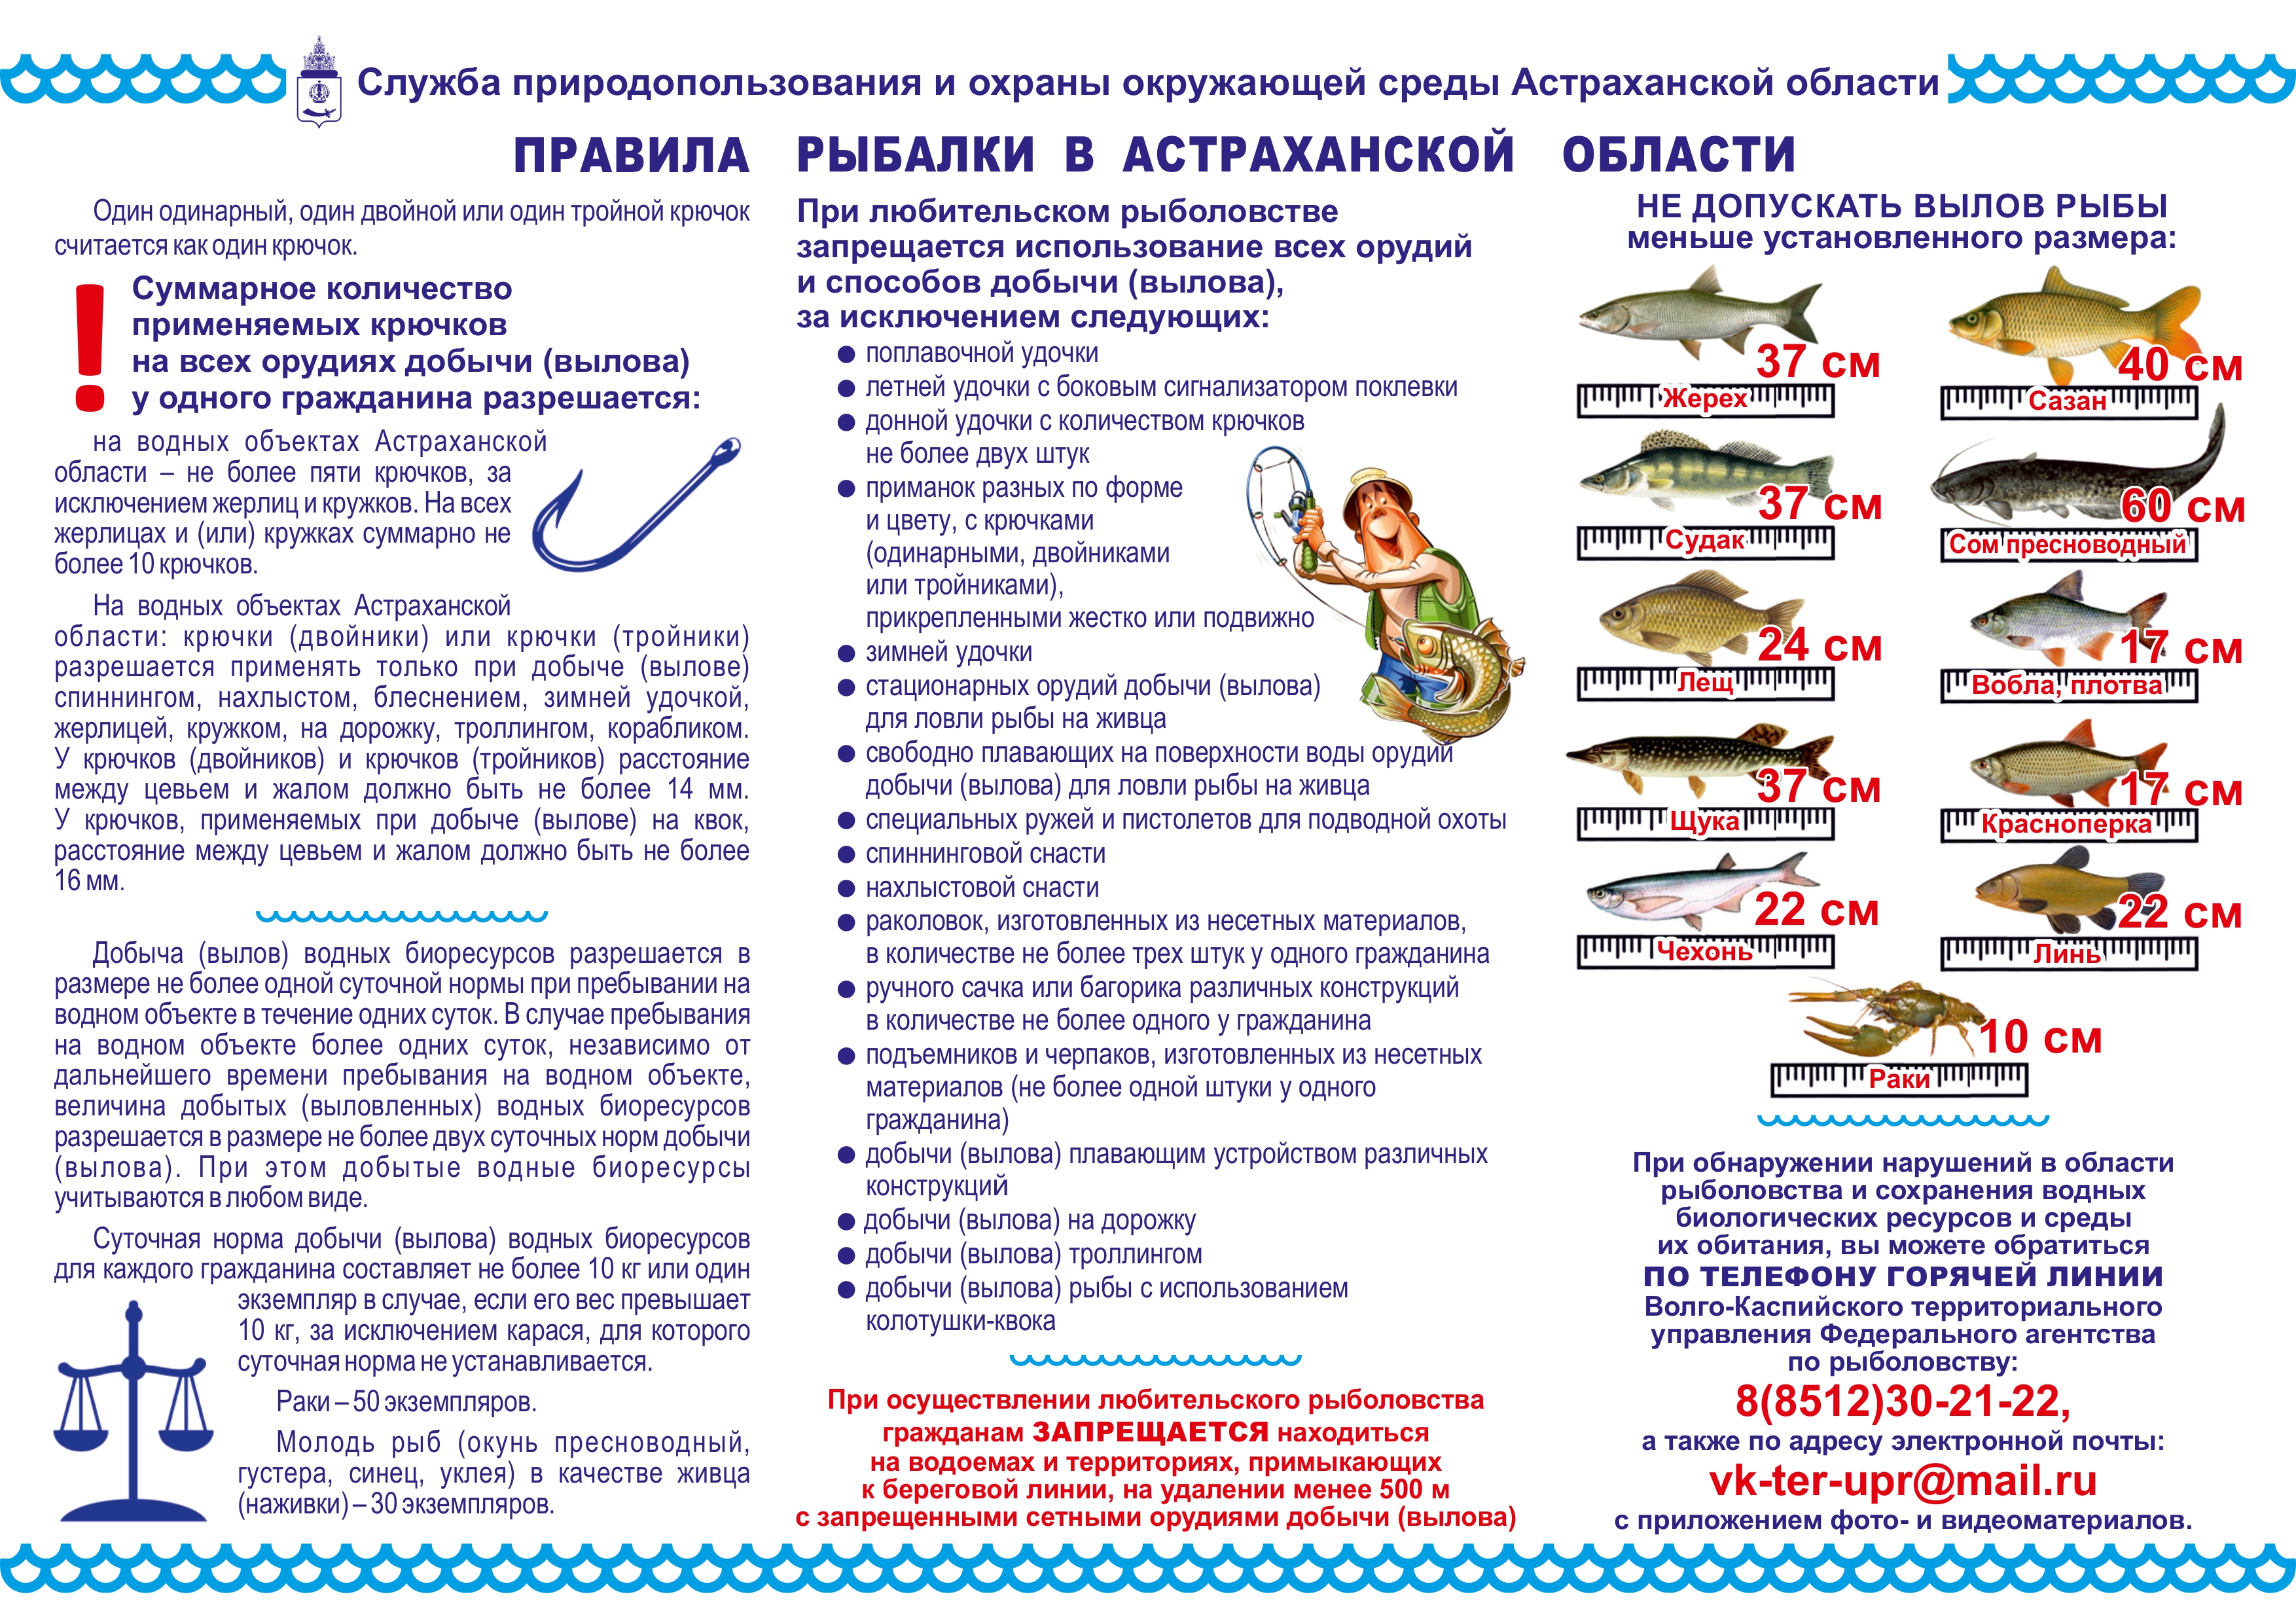 Изменения в правила рыболовства